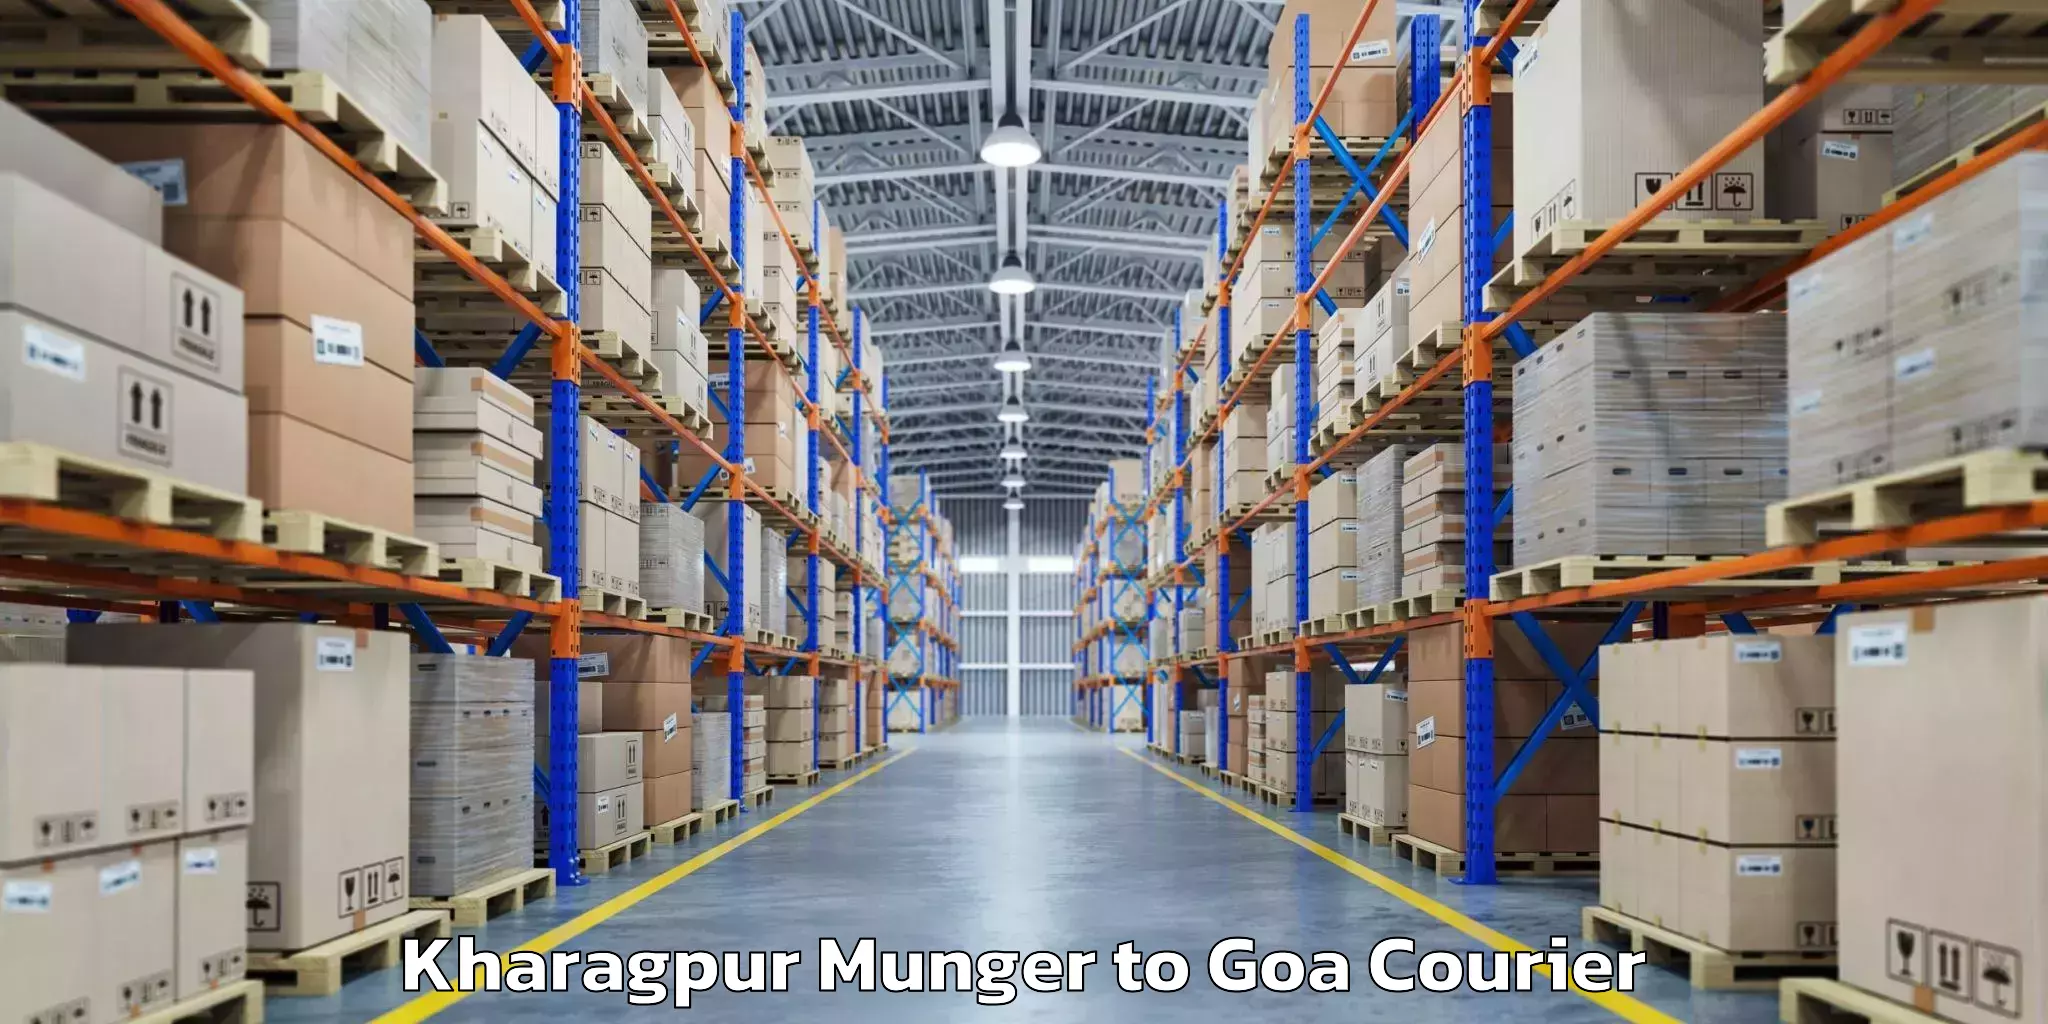 Automated luggage transport Kharagpur Munger to Goa